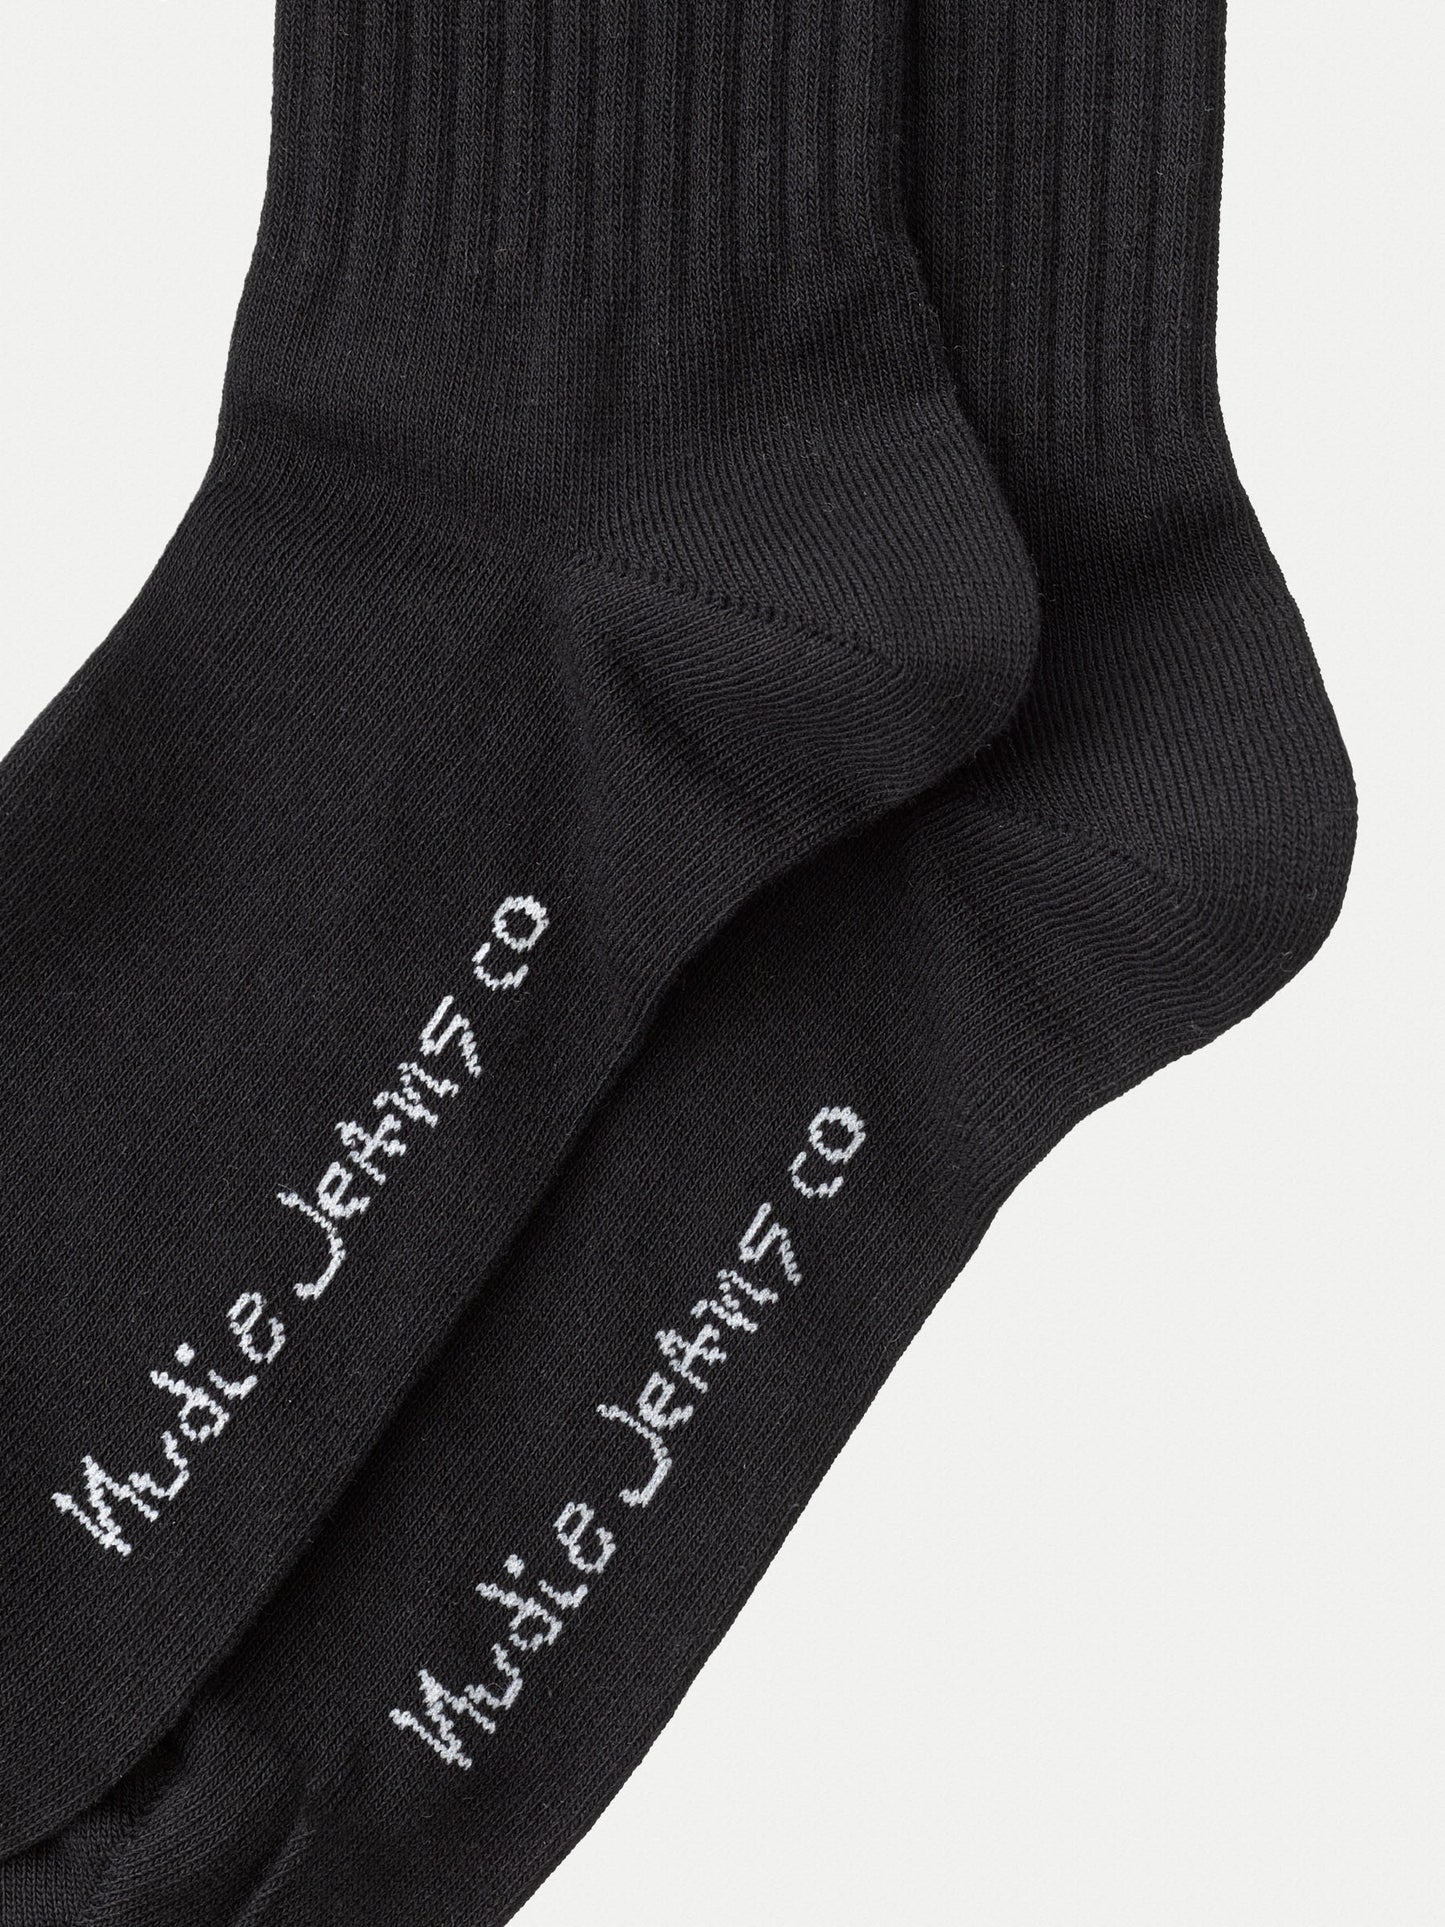 Amundsson Sports Socks - Black/White